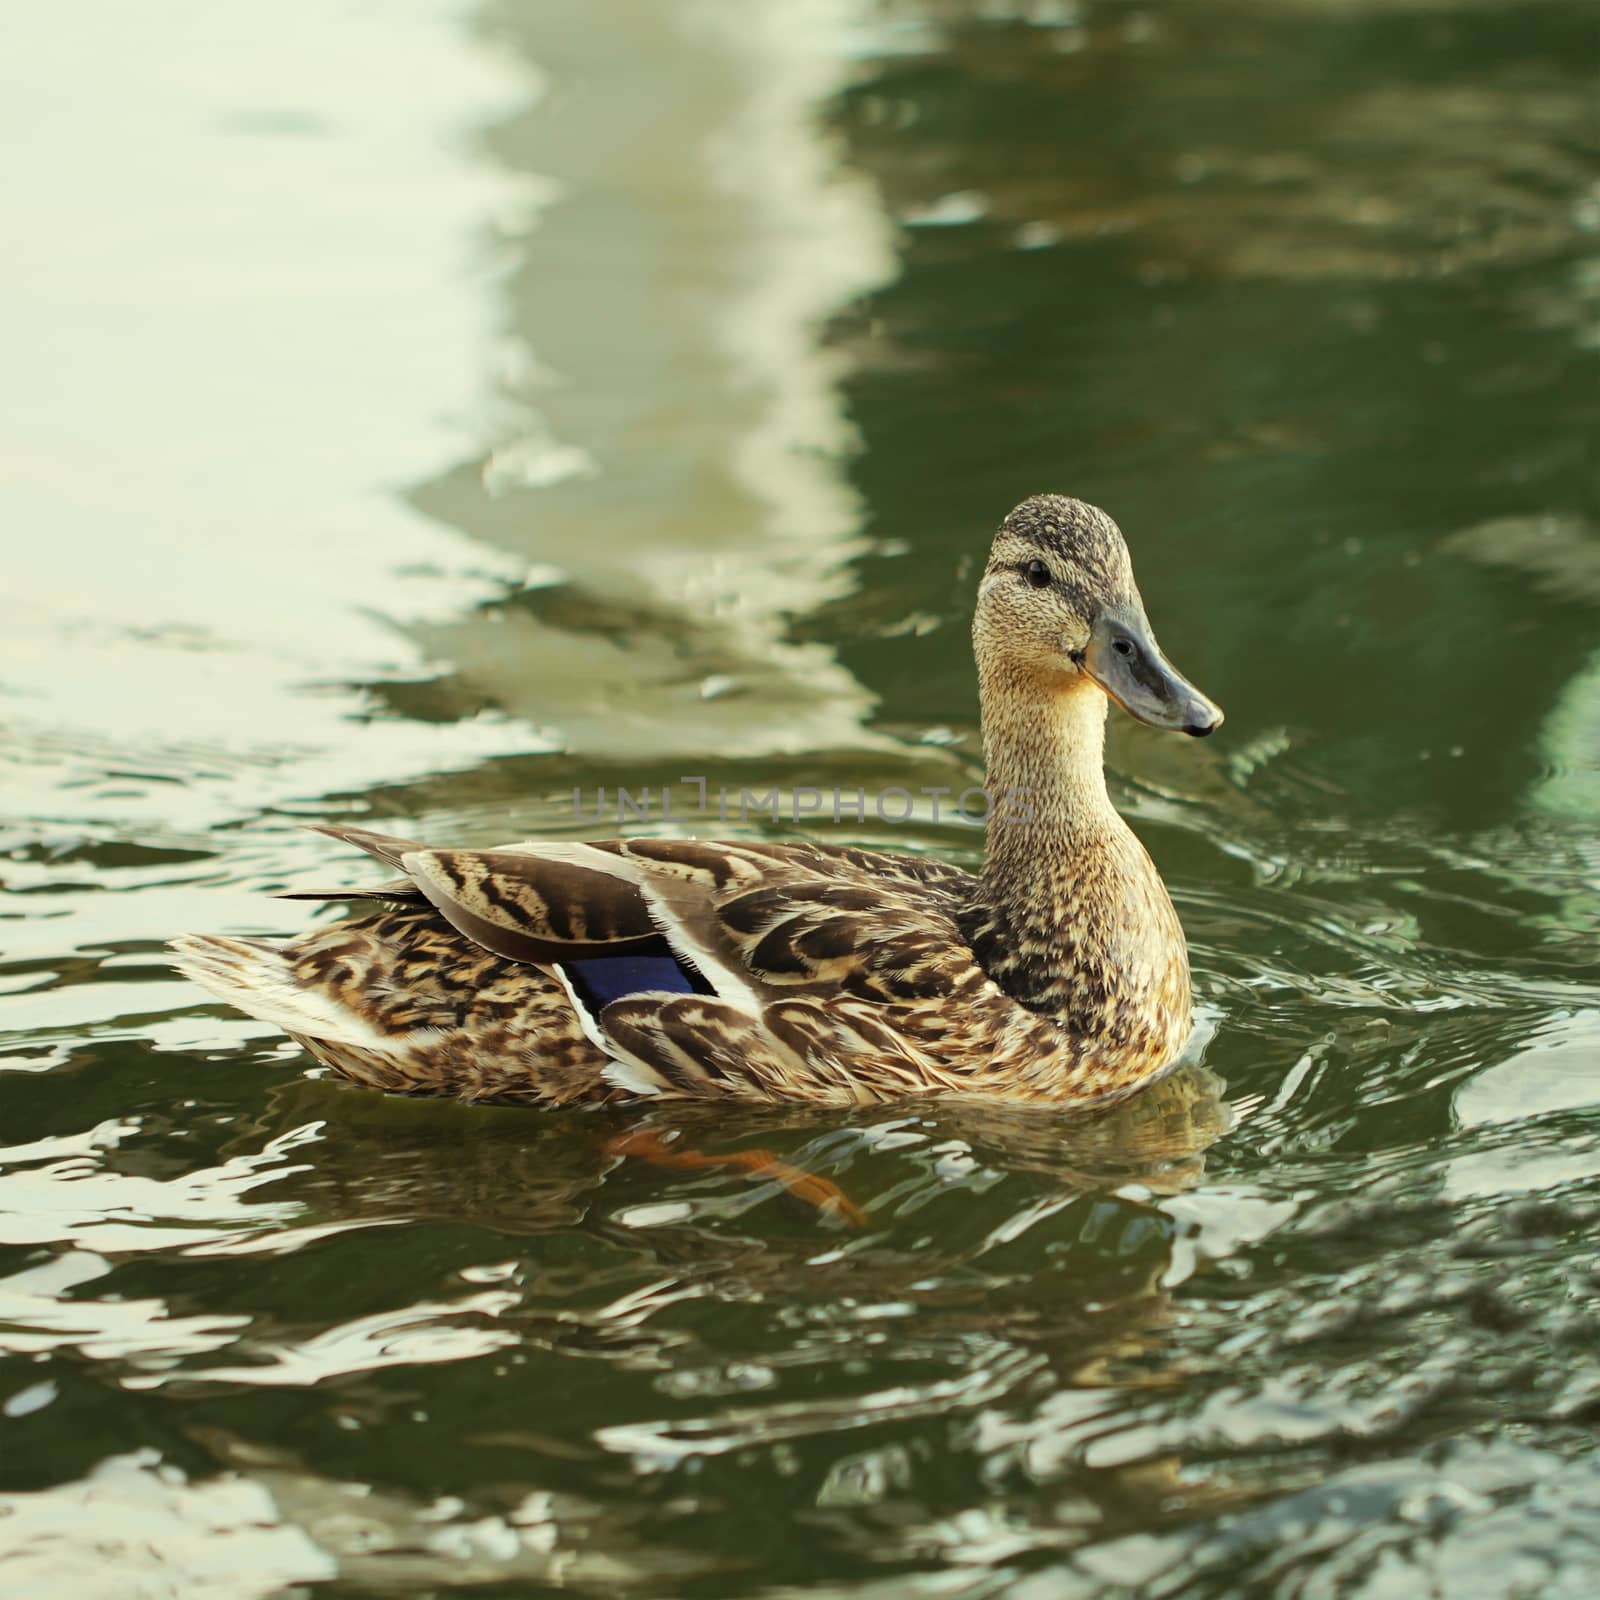 Wild duck bird in the lake by Voinakh